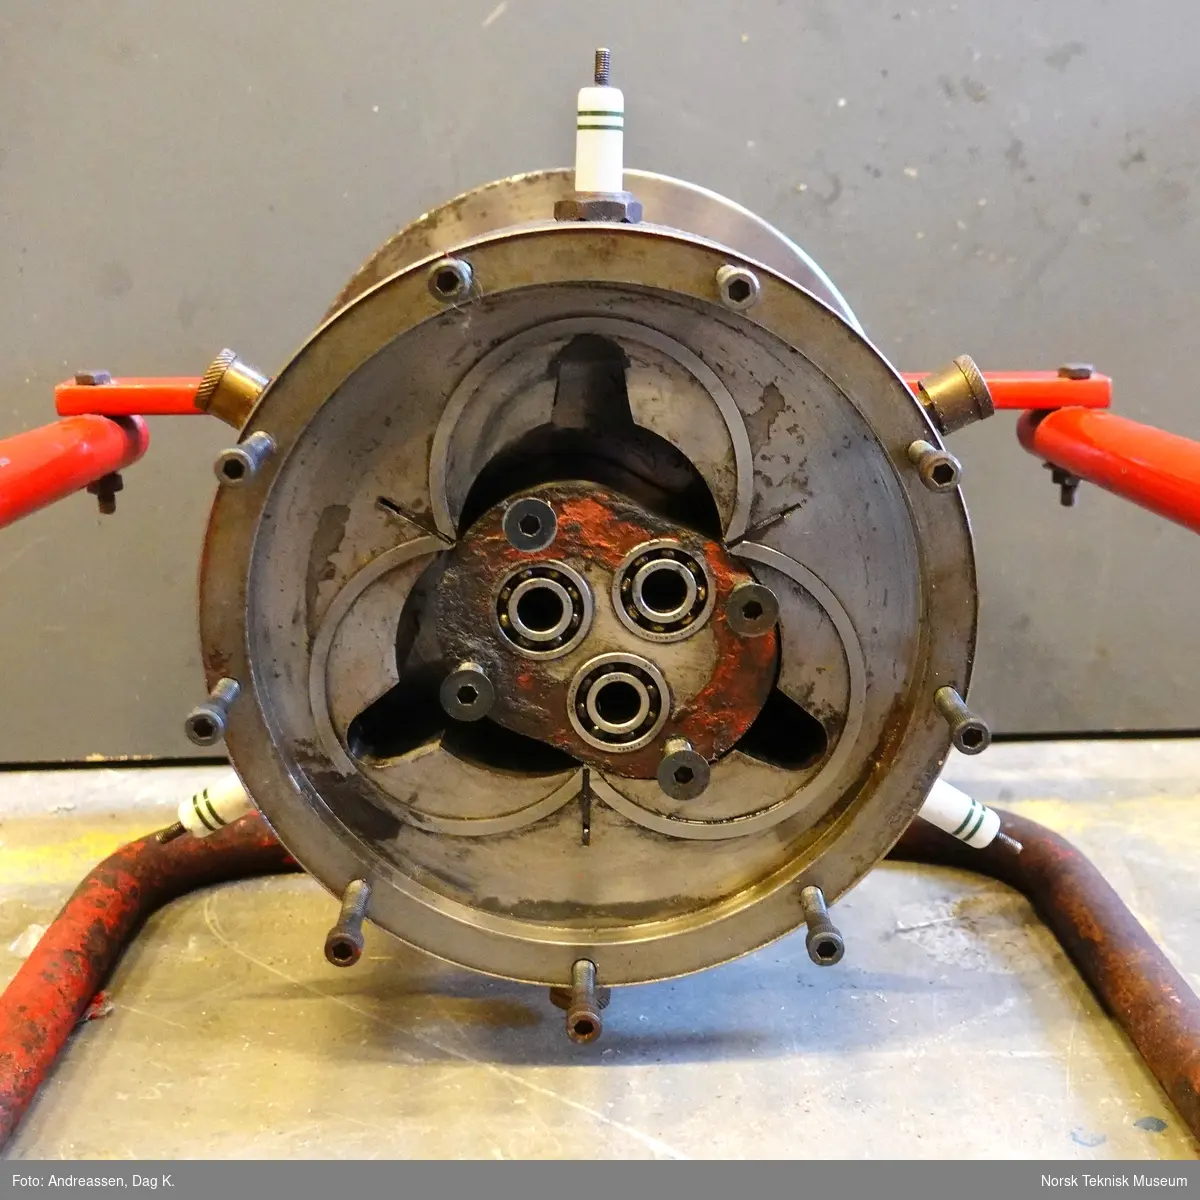 Rotasjonsmotor patentert i 1963 i alle gjeldende industriland. Motoren har en rotor som ligner fasongen på en skøytebane og en stator med 3 kammere lik en trekløver. På begge sider av rotoren er det festet skiver som følger rotorens bevegelse. I disse skivene er det frest ut spalter som fungerer som ventiler for innsug og eksos. Rotoren går i en bane slik at det dannes tre arbeidstakter for hver omdreining av utgående aksel. Rotoren blir tvangsstyrt av tre eksentertapper som har utvendig fortanning (planethjul). Utenfor disse er det en ring med innvendig fortanning (solhjul) som styrer planethjulene. Mellom rotor og stator er det montert tetningslister.